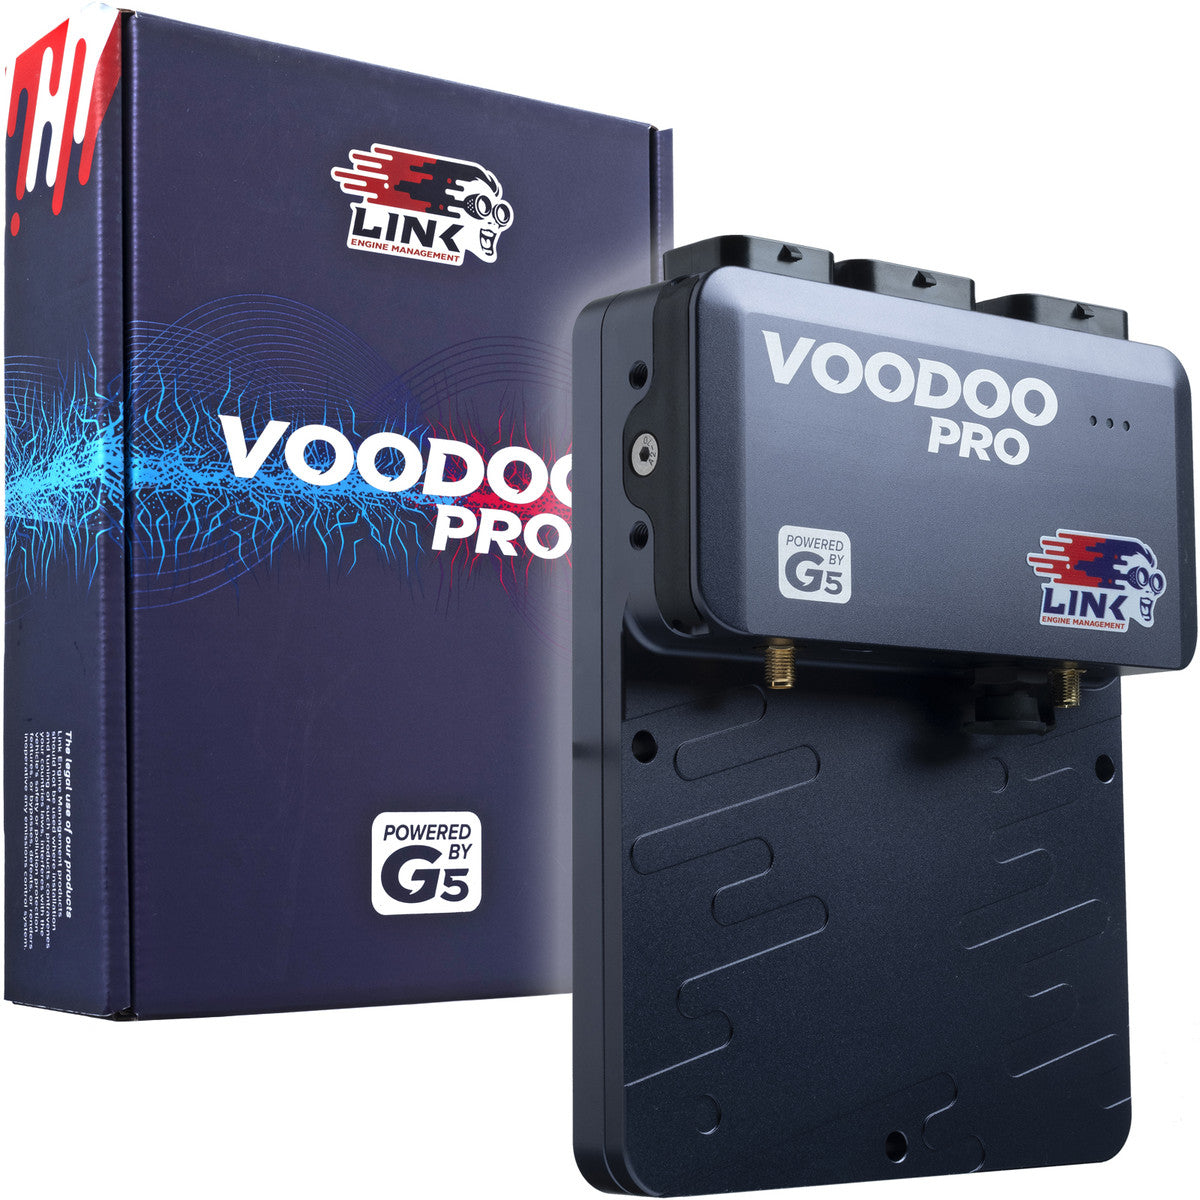 Link- G5 Voodoo Pro